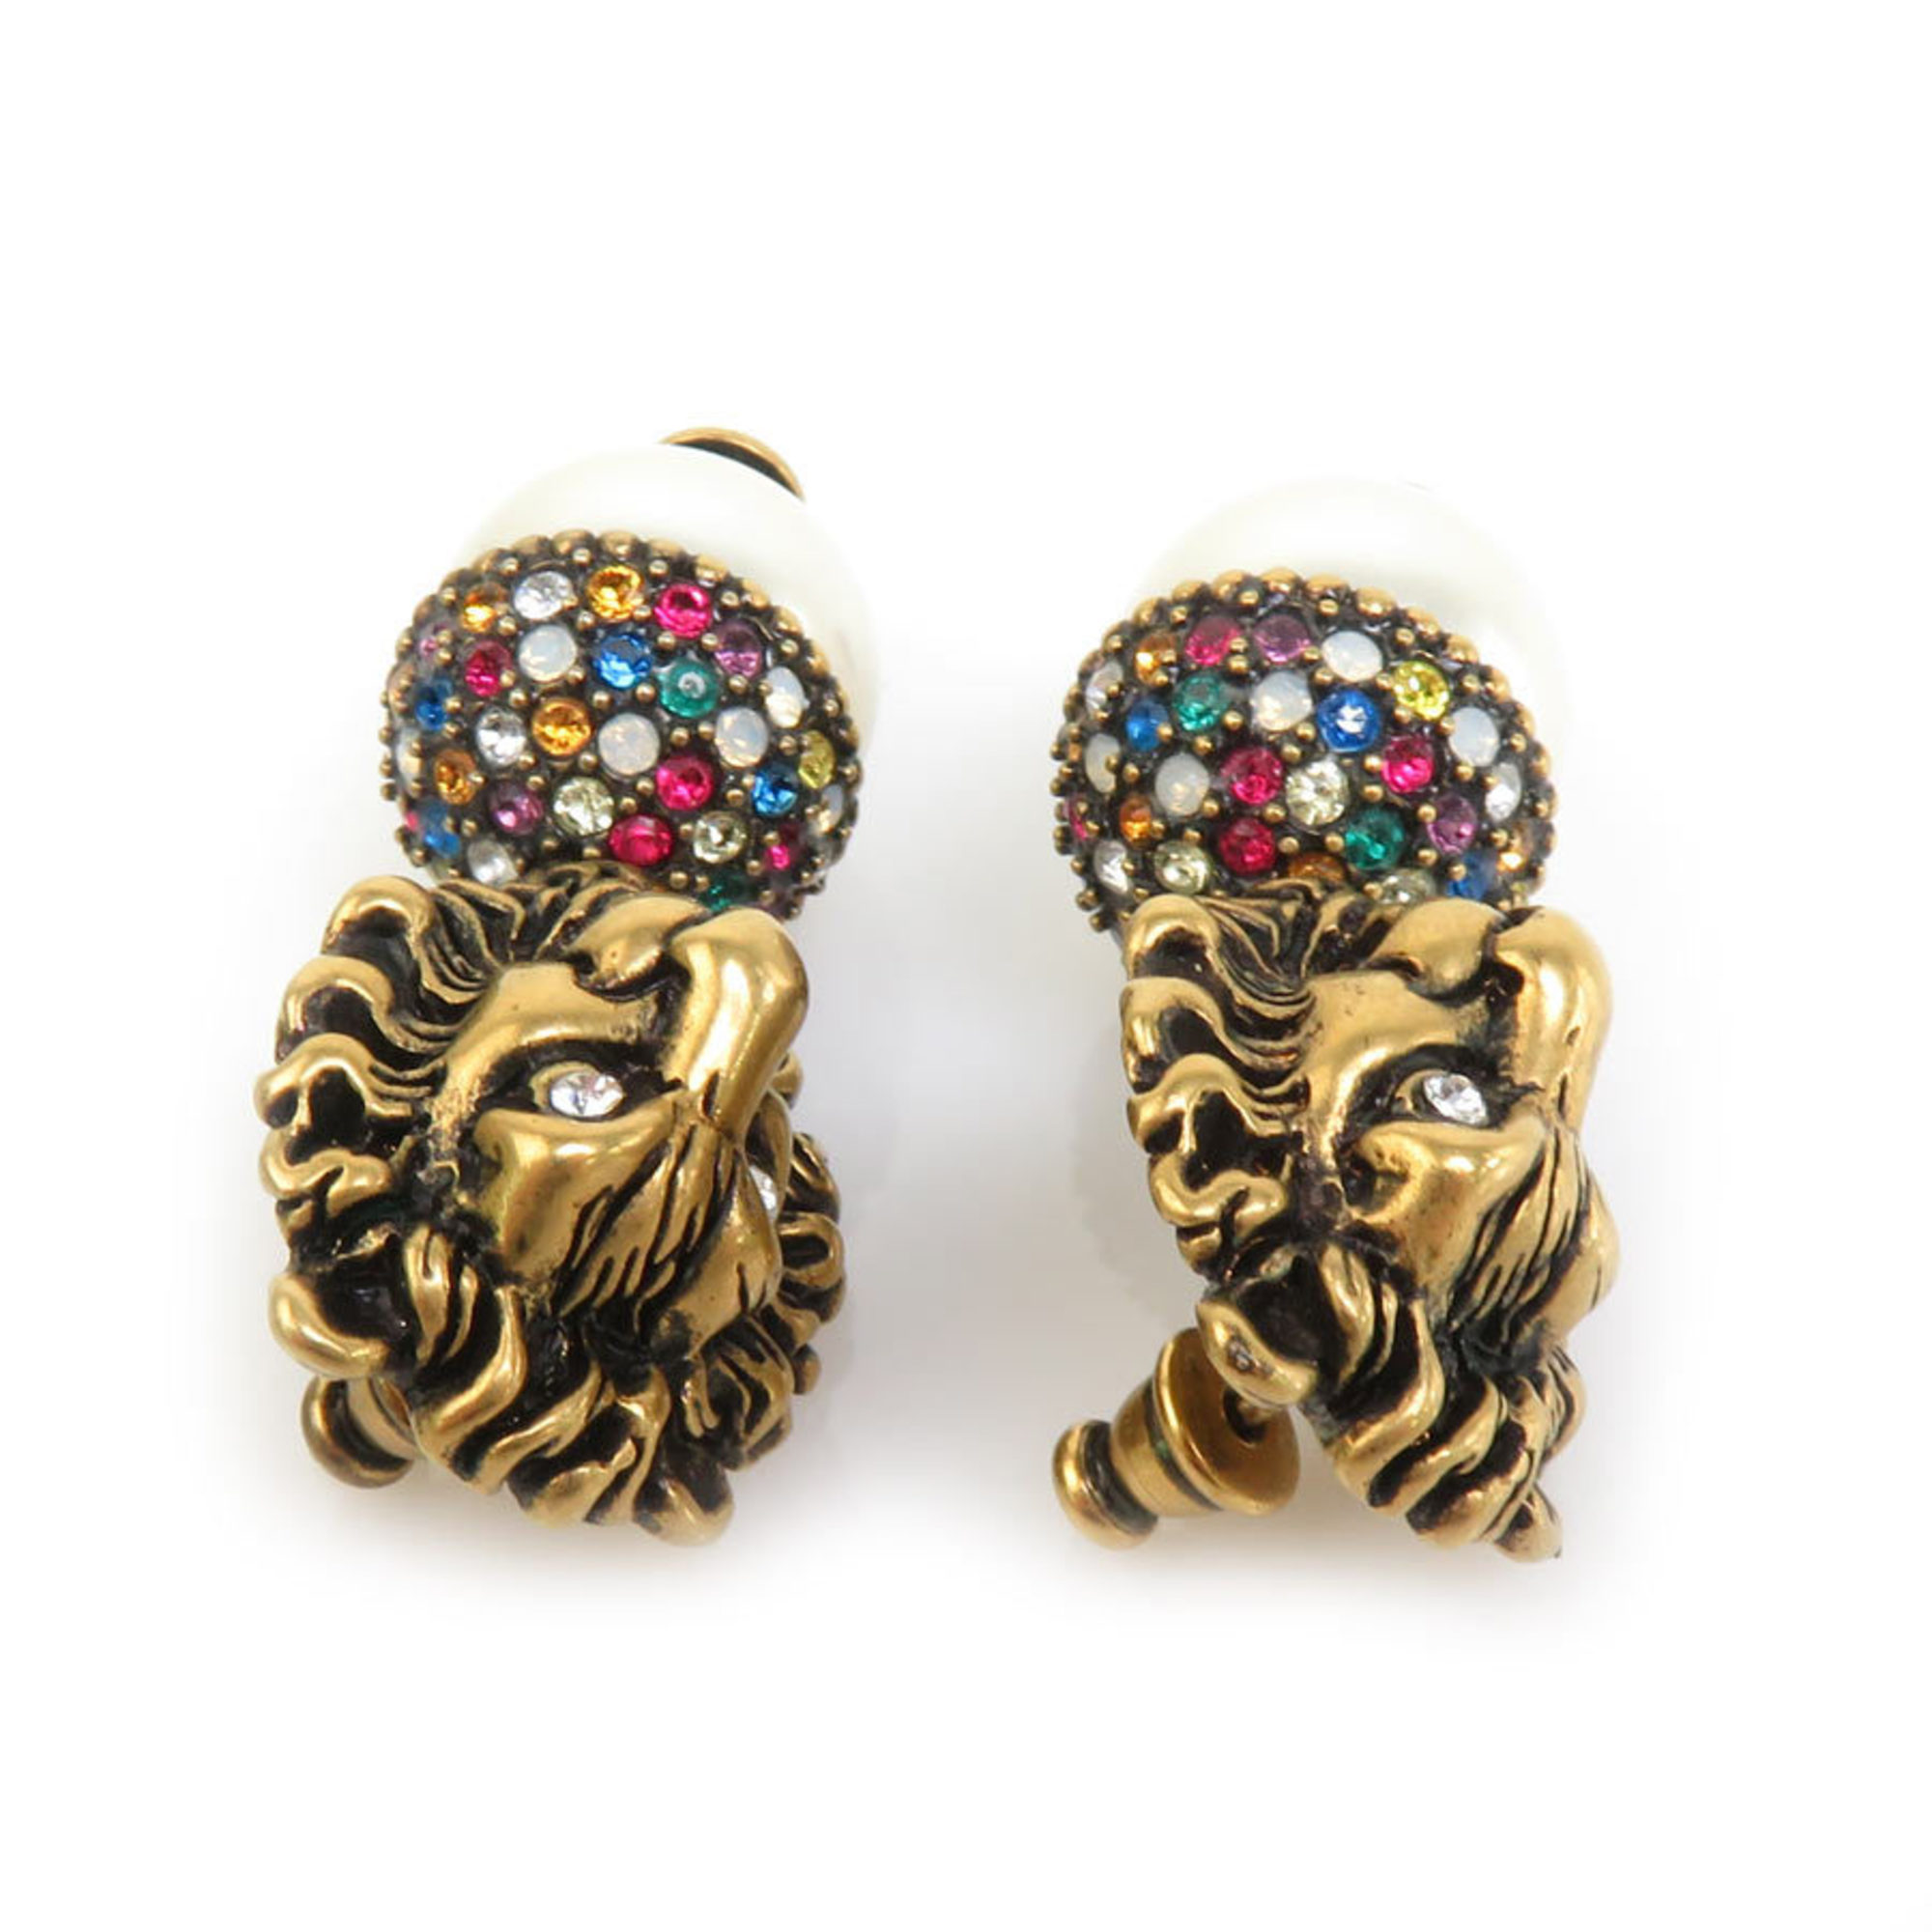 GUCCI Earrings Metal/Faux Pearl Gold Women's h30276f